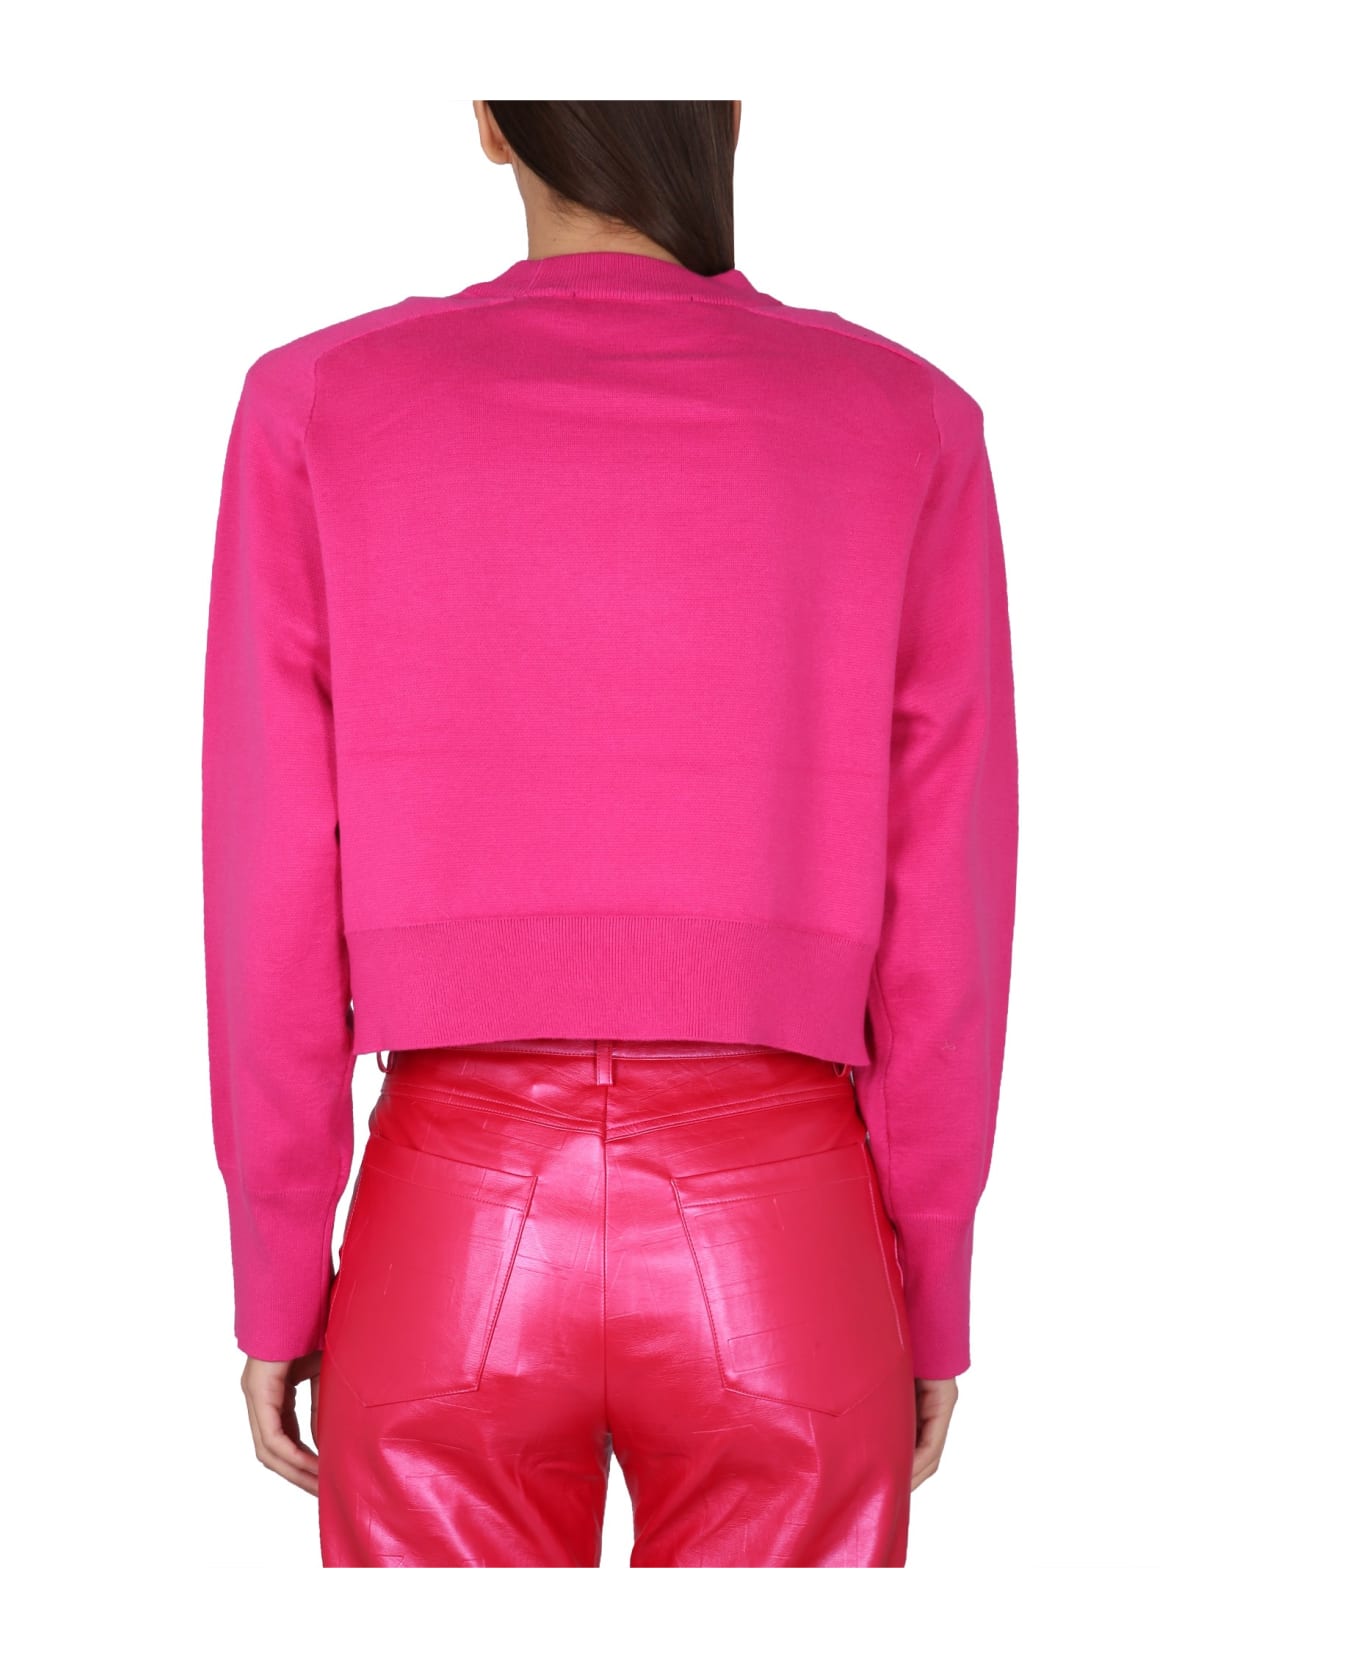 Rotate by Birger Christensen Sweatshirt With Logo - Pink Glo フリース